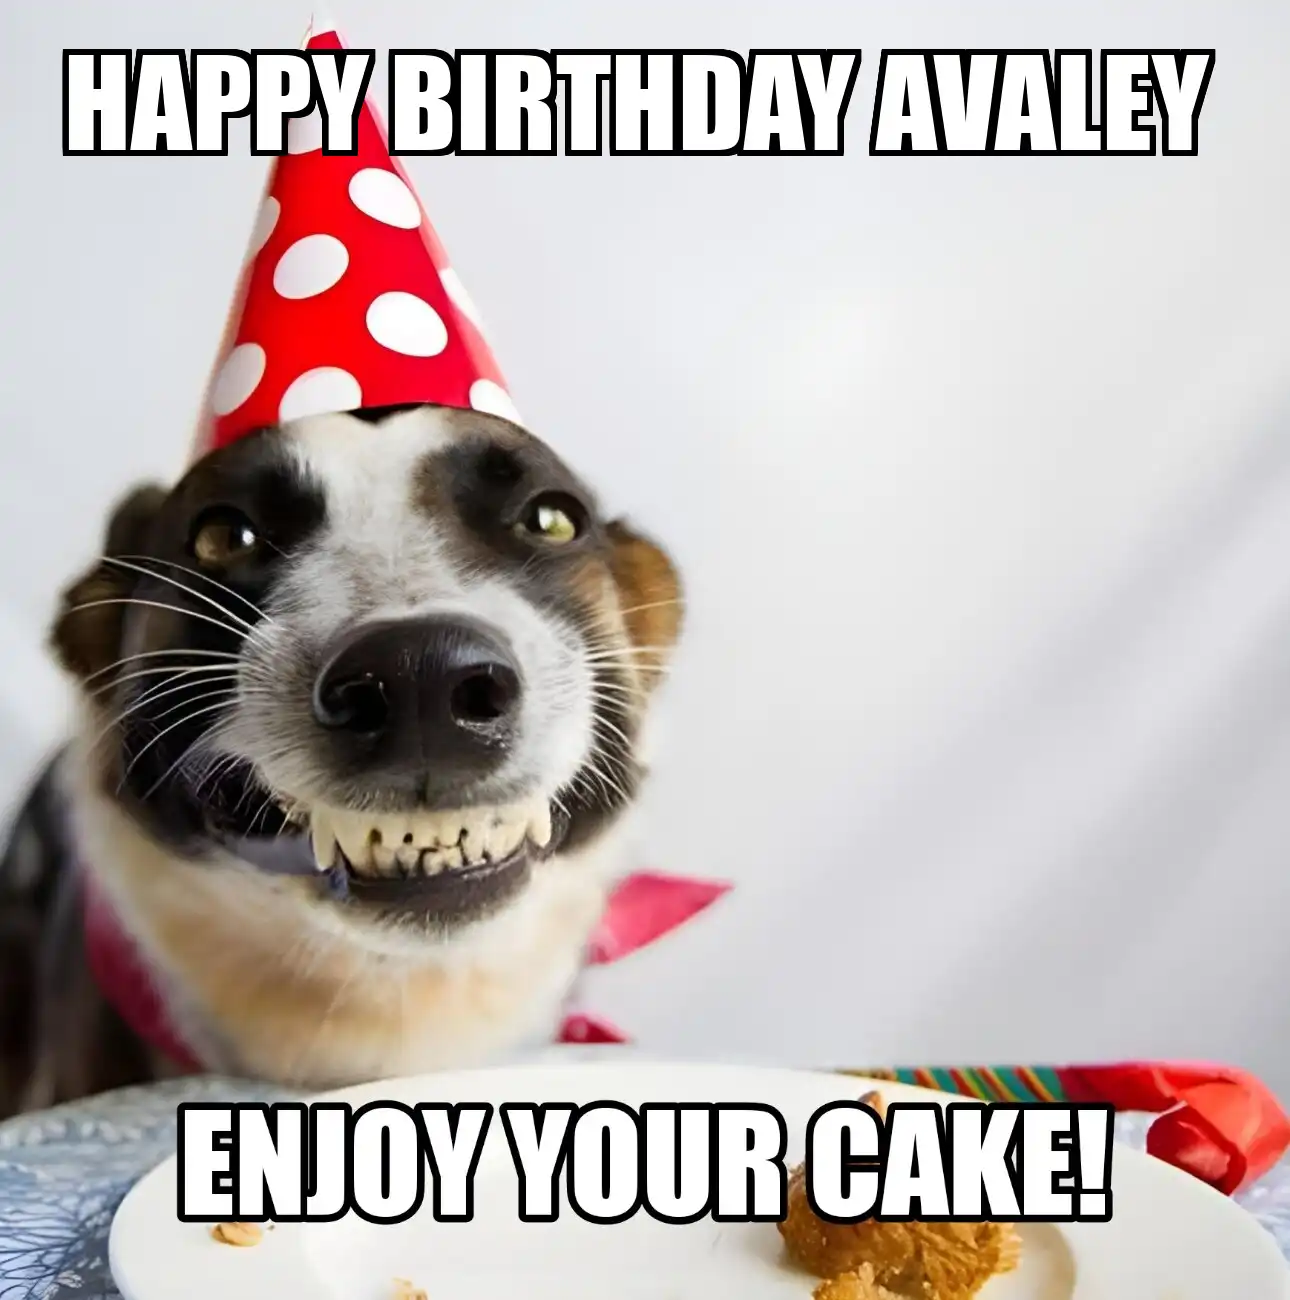 Happy Birthday Avaley Enjoy Your Cake Dog Meme